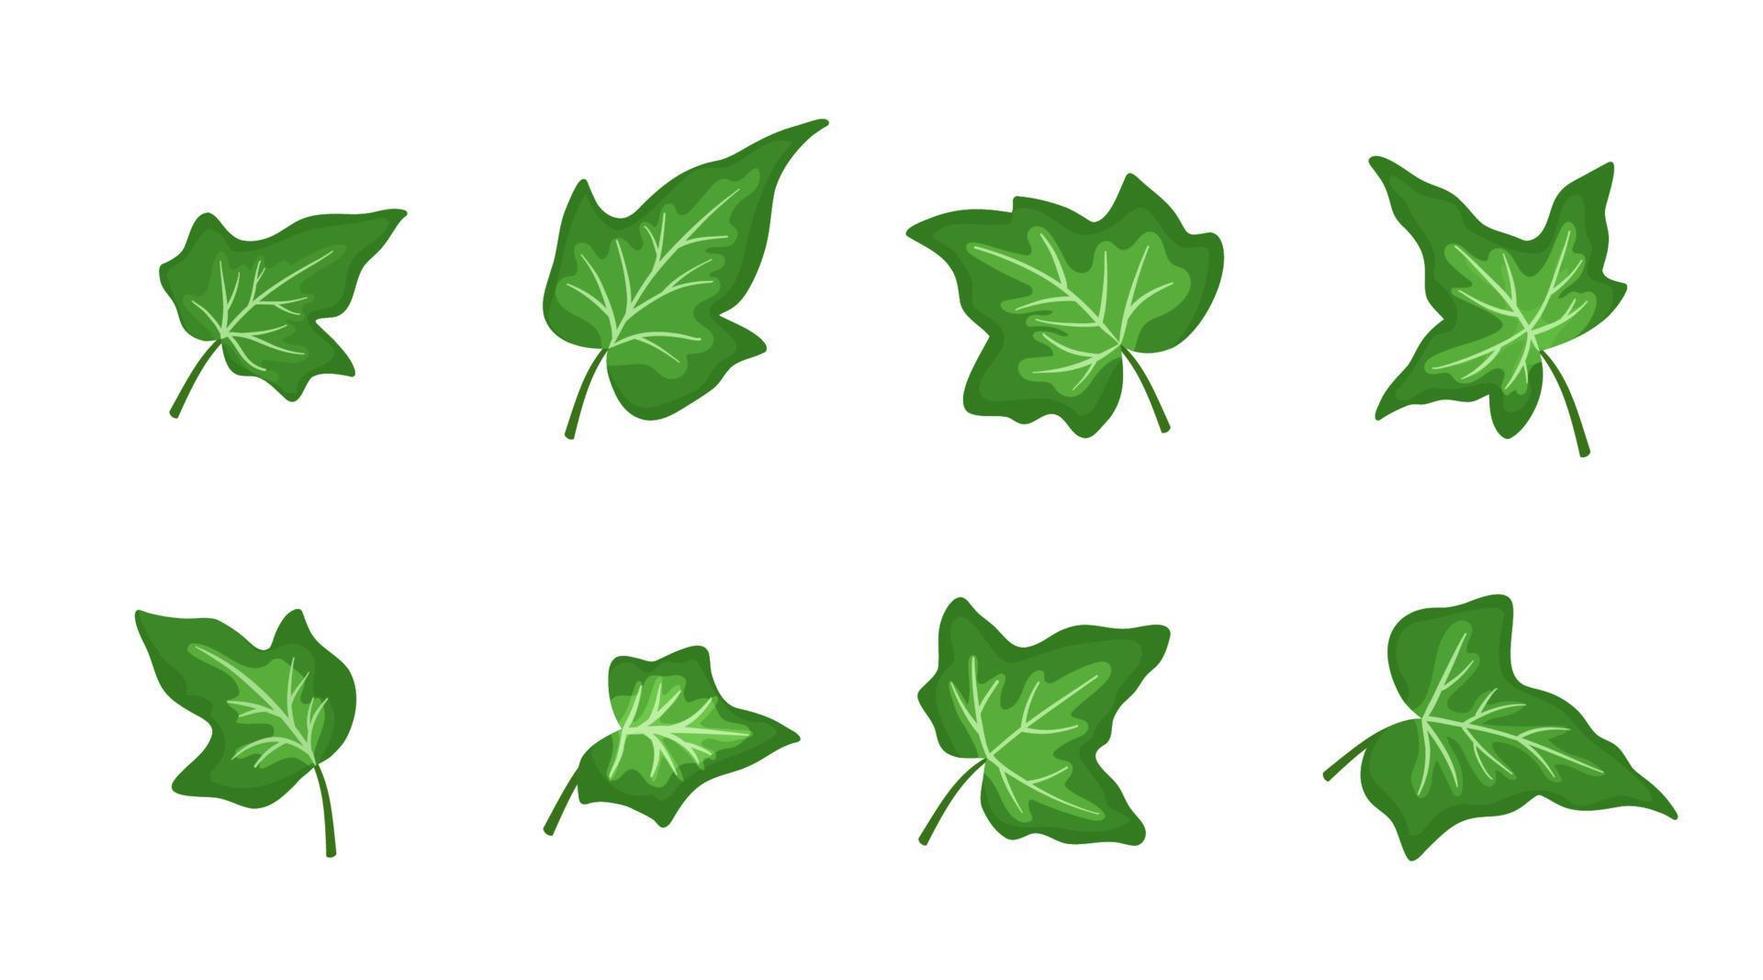 uppsättning gröna murgröna blad isolerad på vit bakgrund. vektor platt tecknade illustrationer